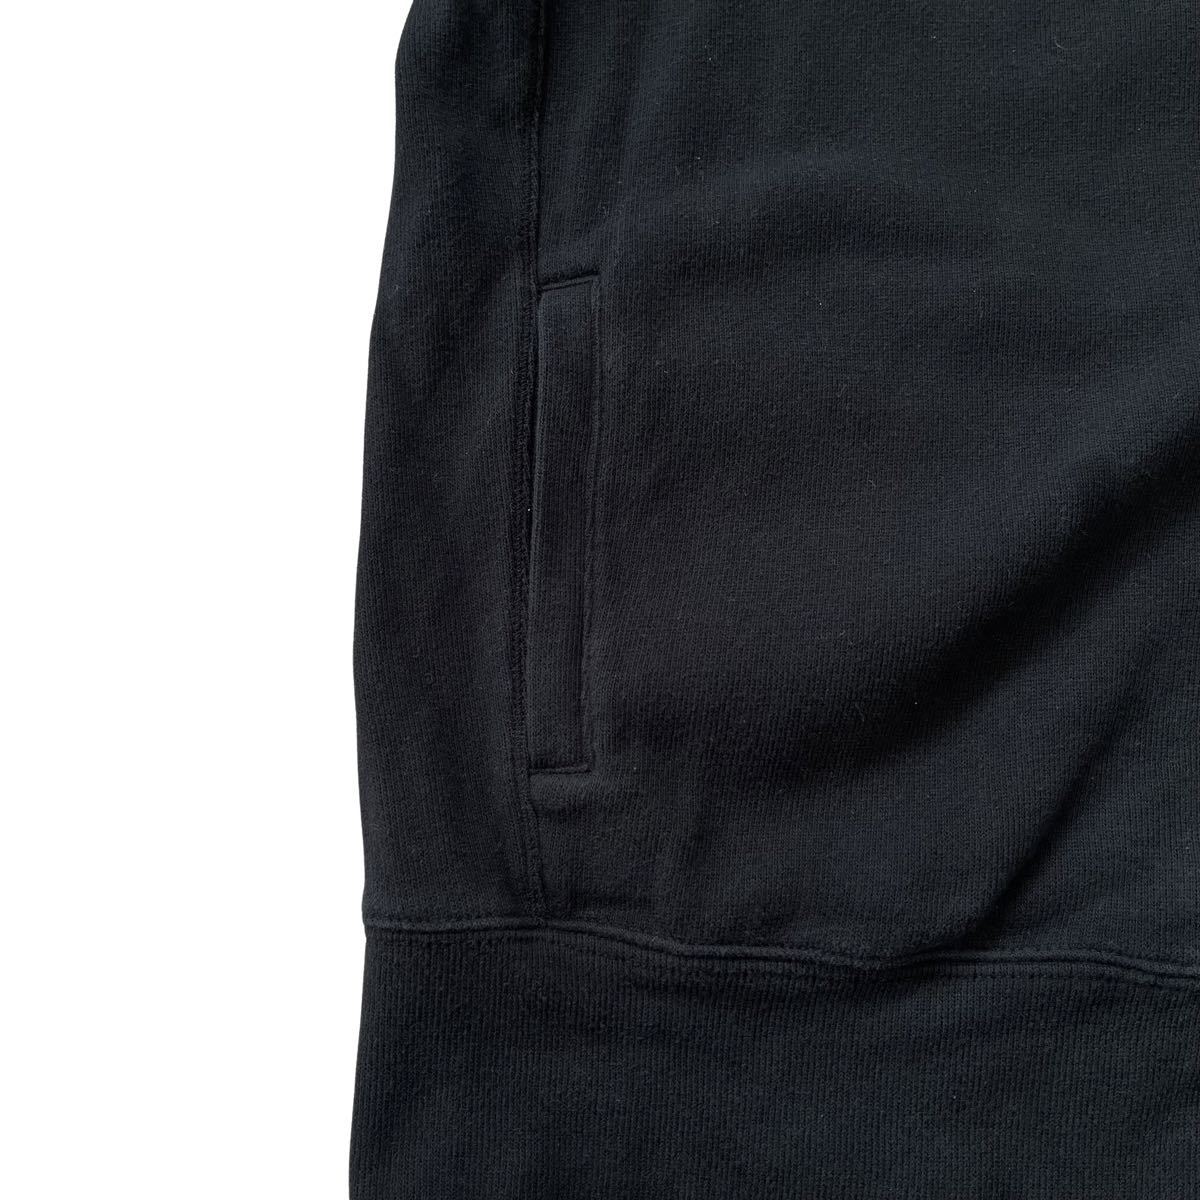 【90s】Polo By Ralph Lauren(ポロラルフローレン) ハイネック フルジップスウェット XL ブラック ポニー刺繍 90年代 トレーナー パーカー